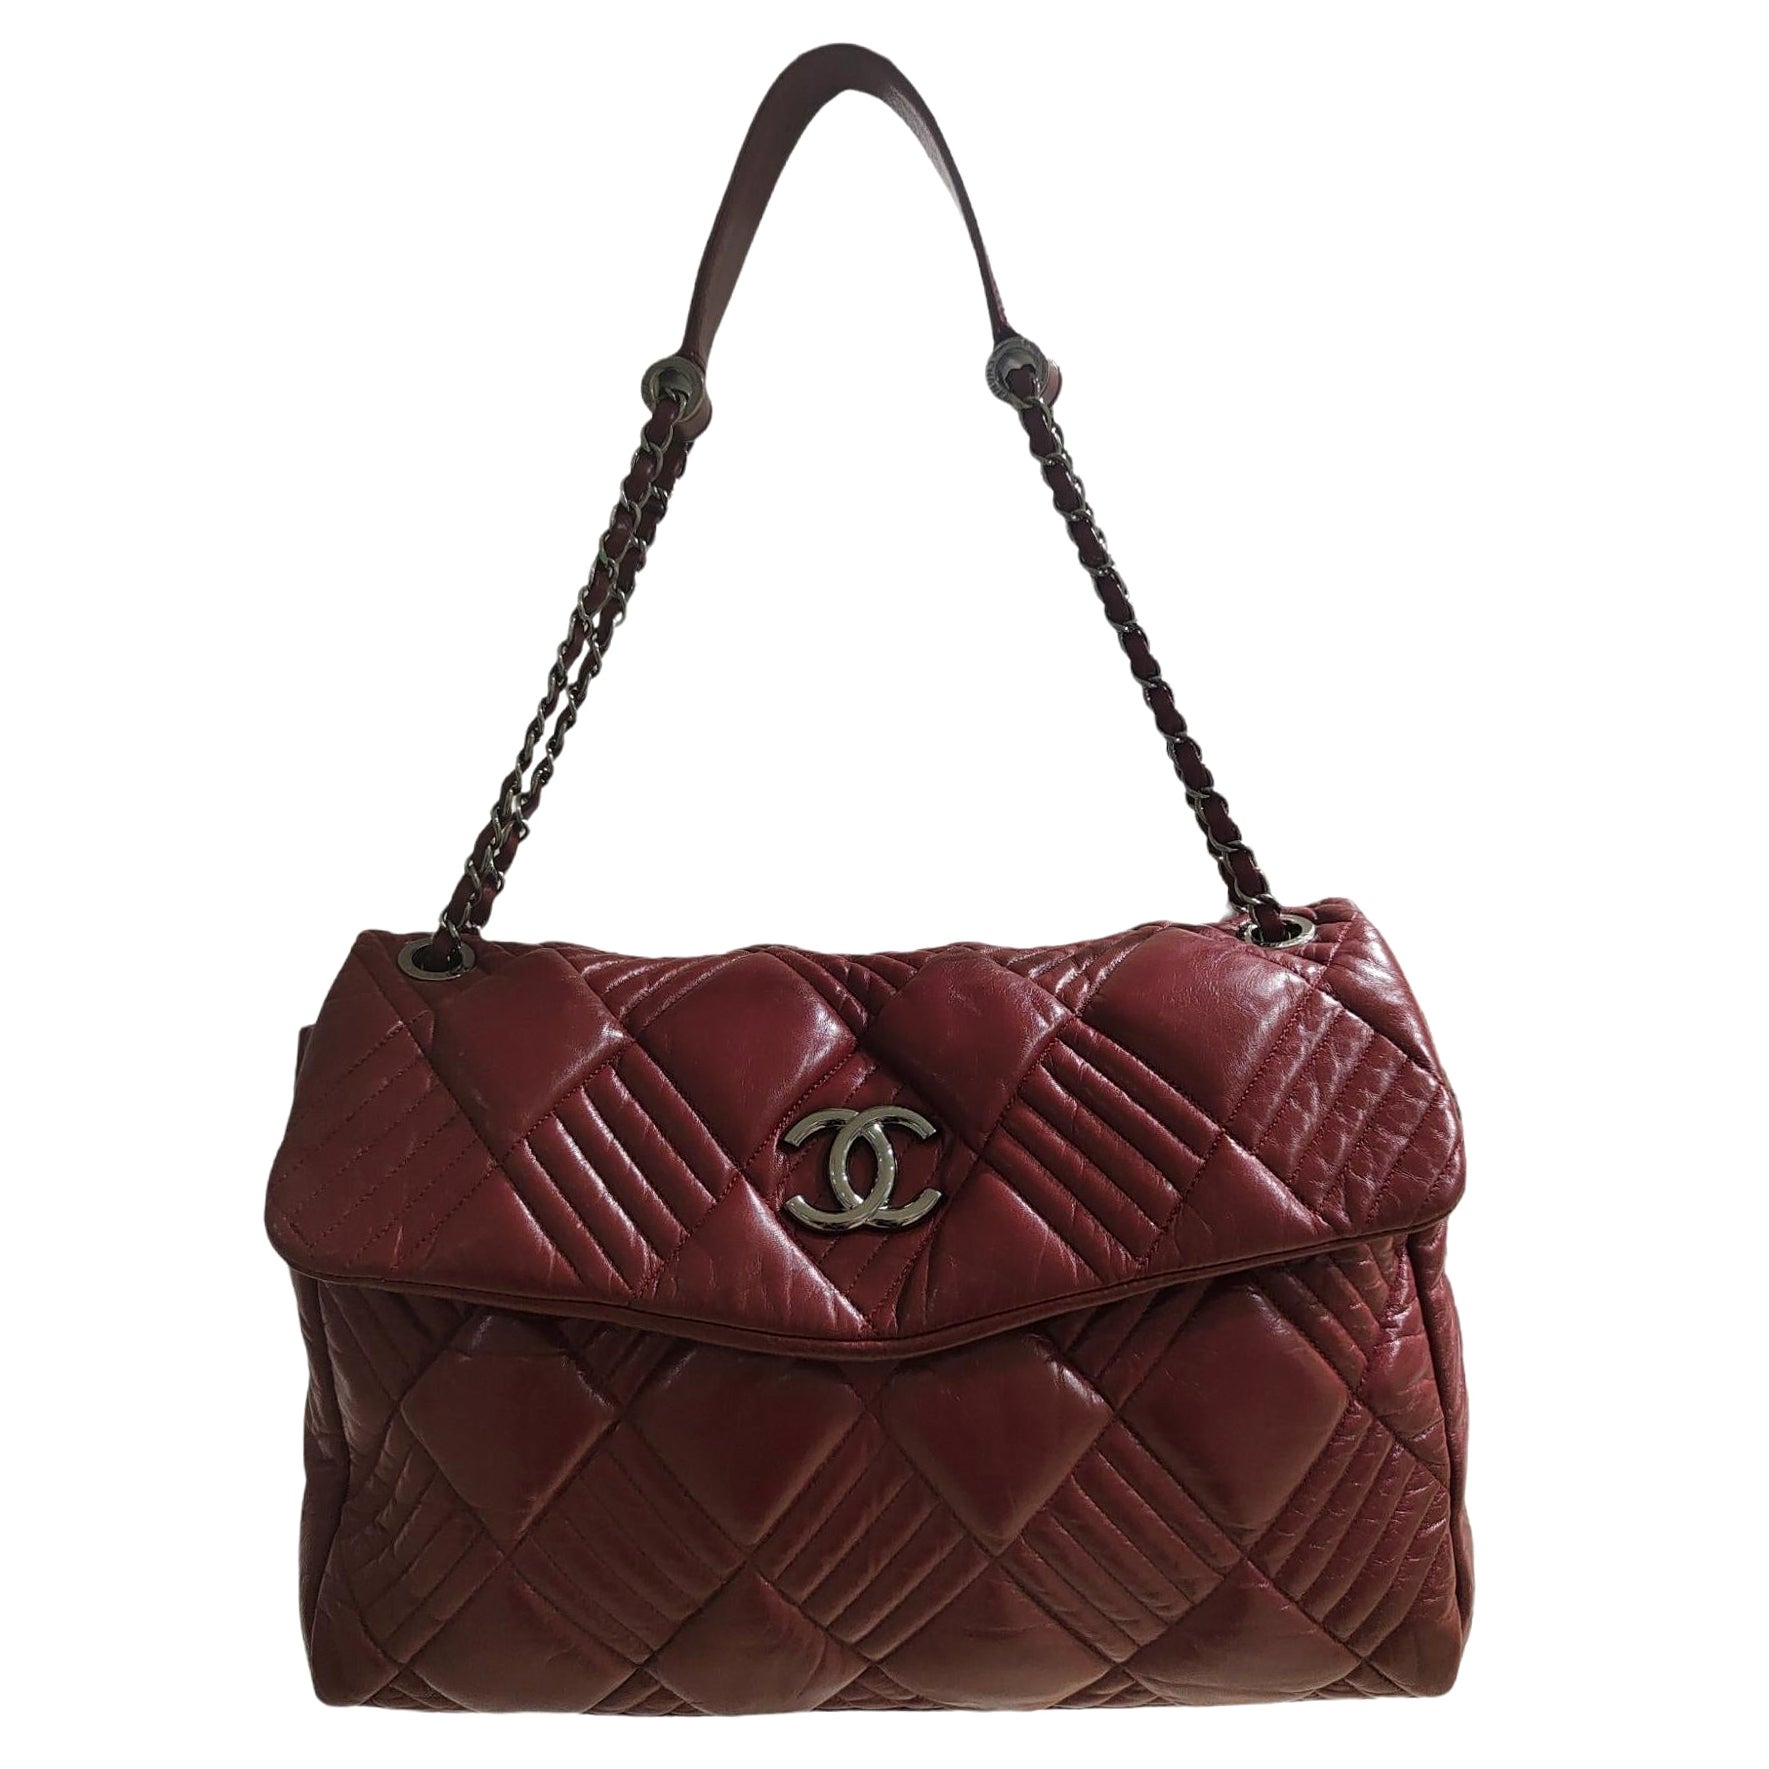 Chanel burgundy leather shoulder bag